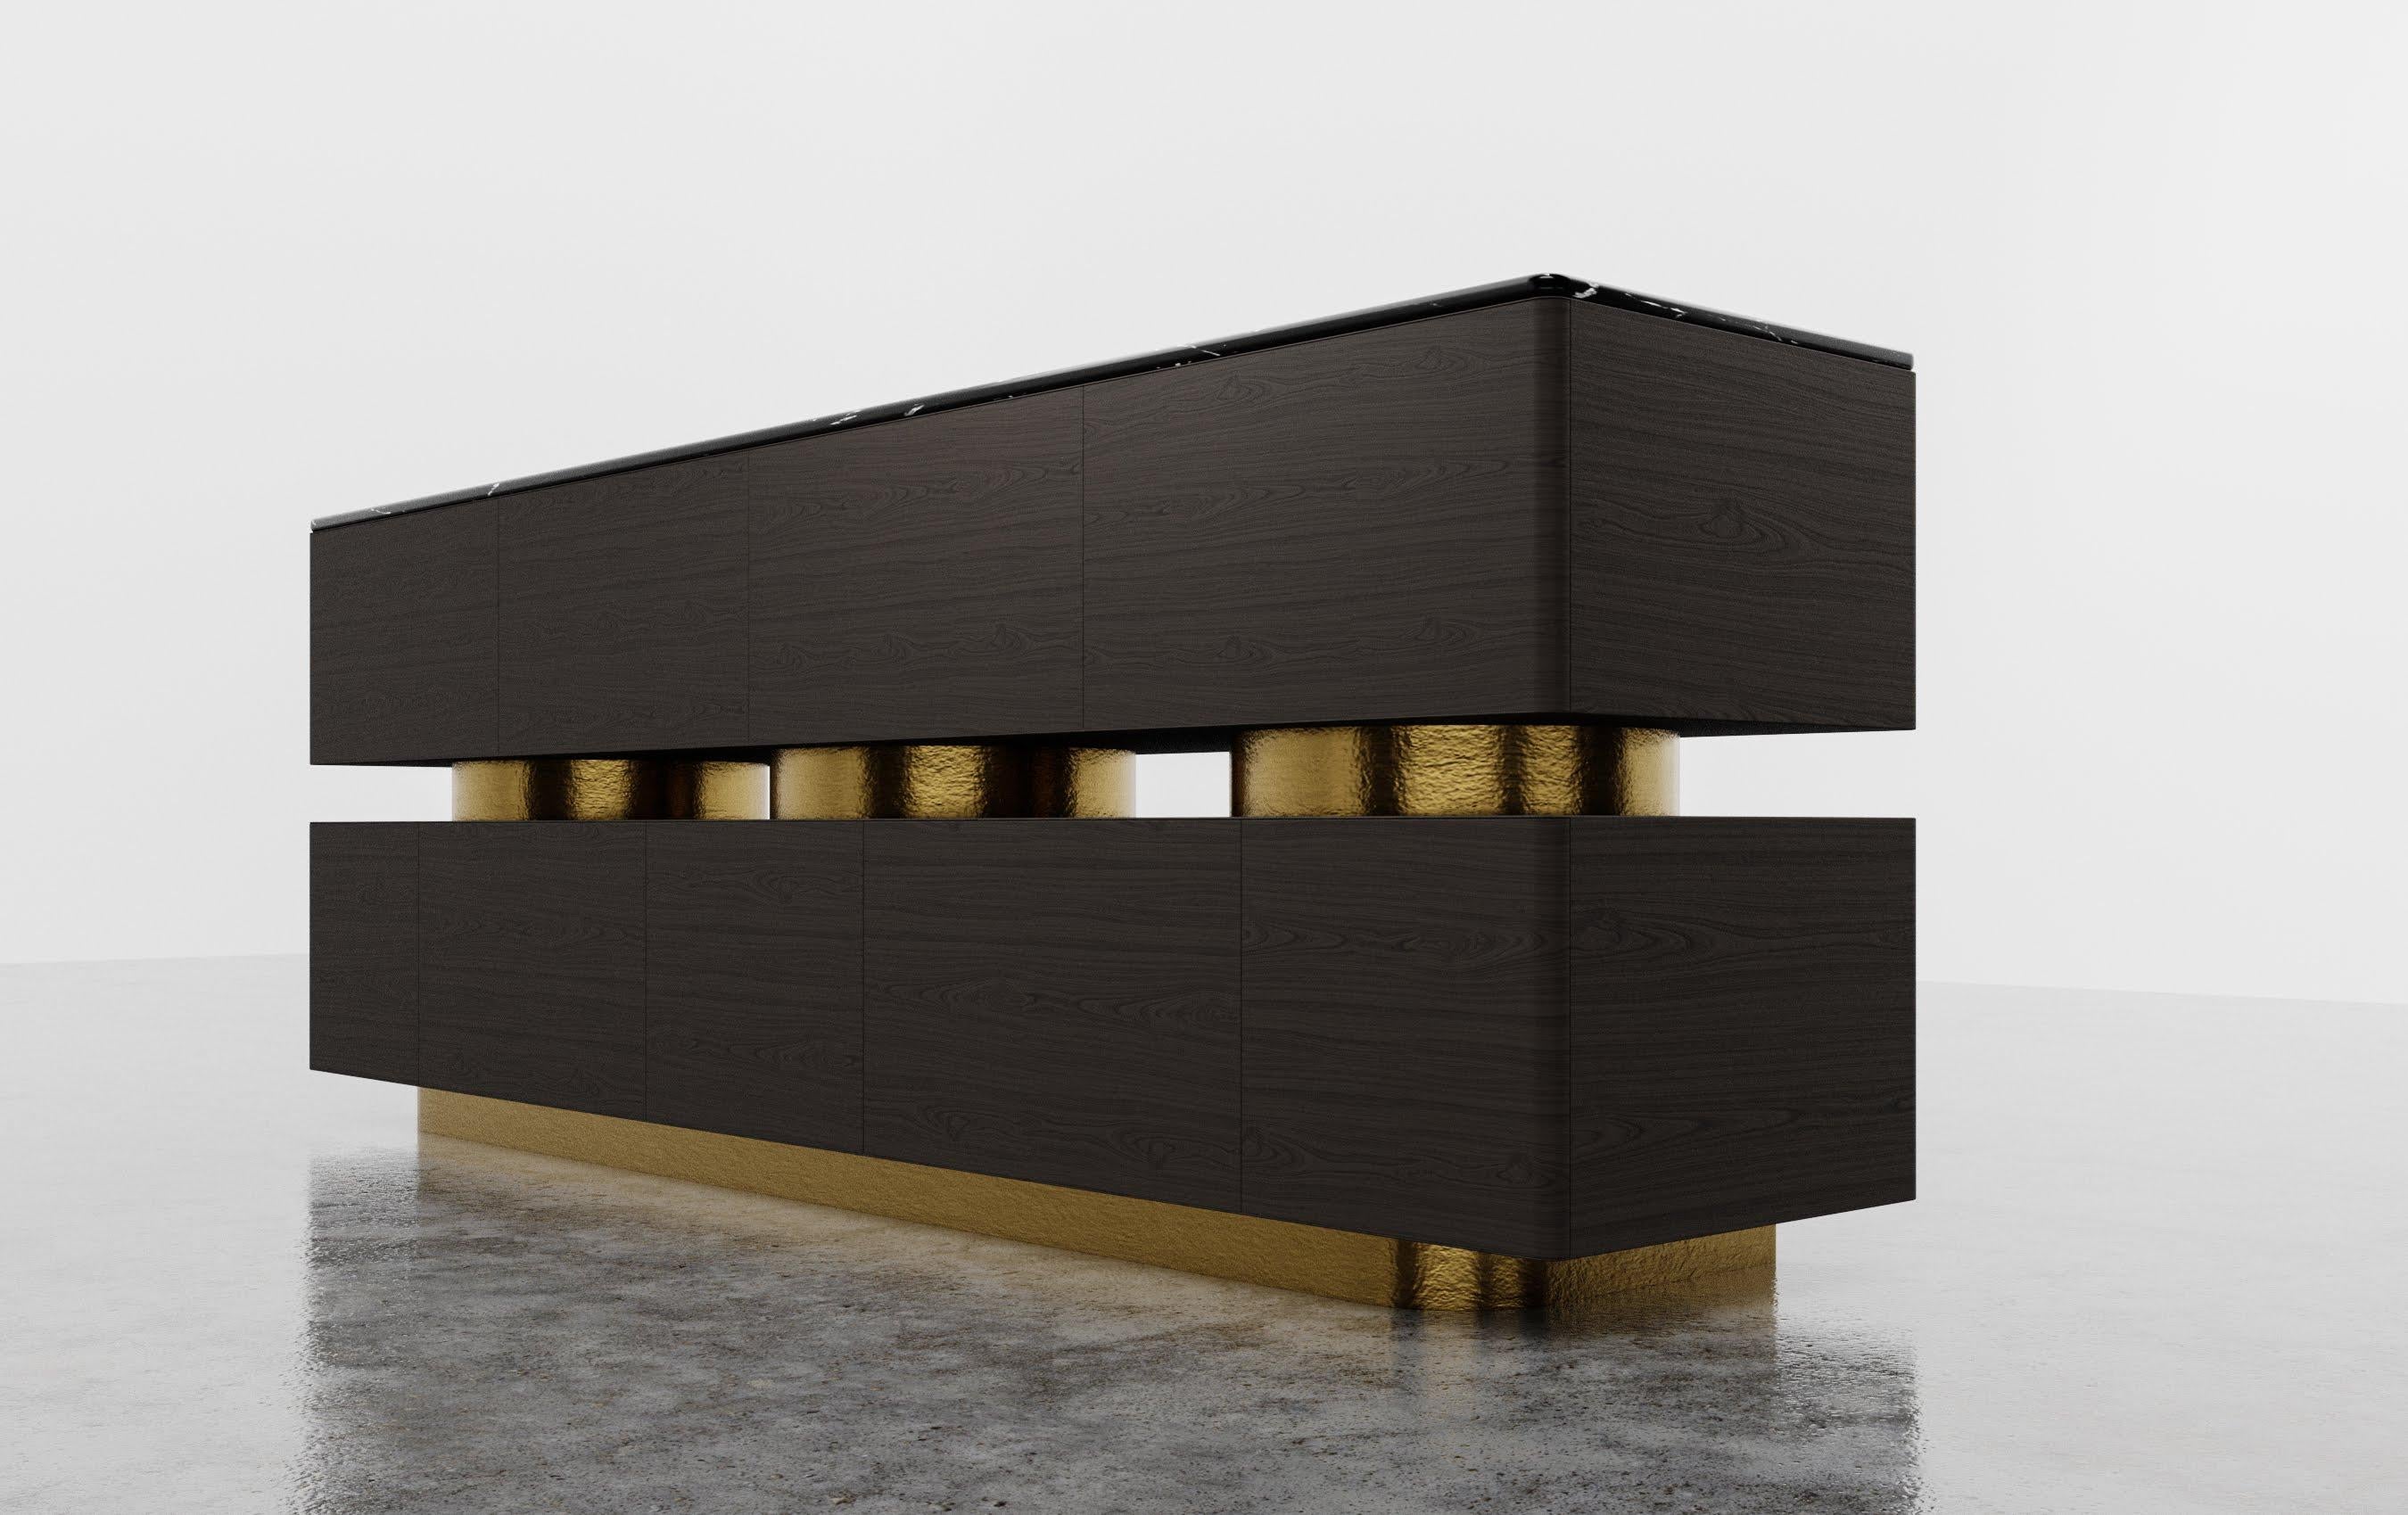 DECO CREDENZA – Moderne Ebenholz-Zylinder aus Nussbaumholz + Blattgold + Nero Marquina-Marmor

Die Deco Credenza ist ein atemberaubendes Möbelstück, das sich durch ein modernes, mehrtüriges, gestapeltes Schrankdesign mit einzigartigen